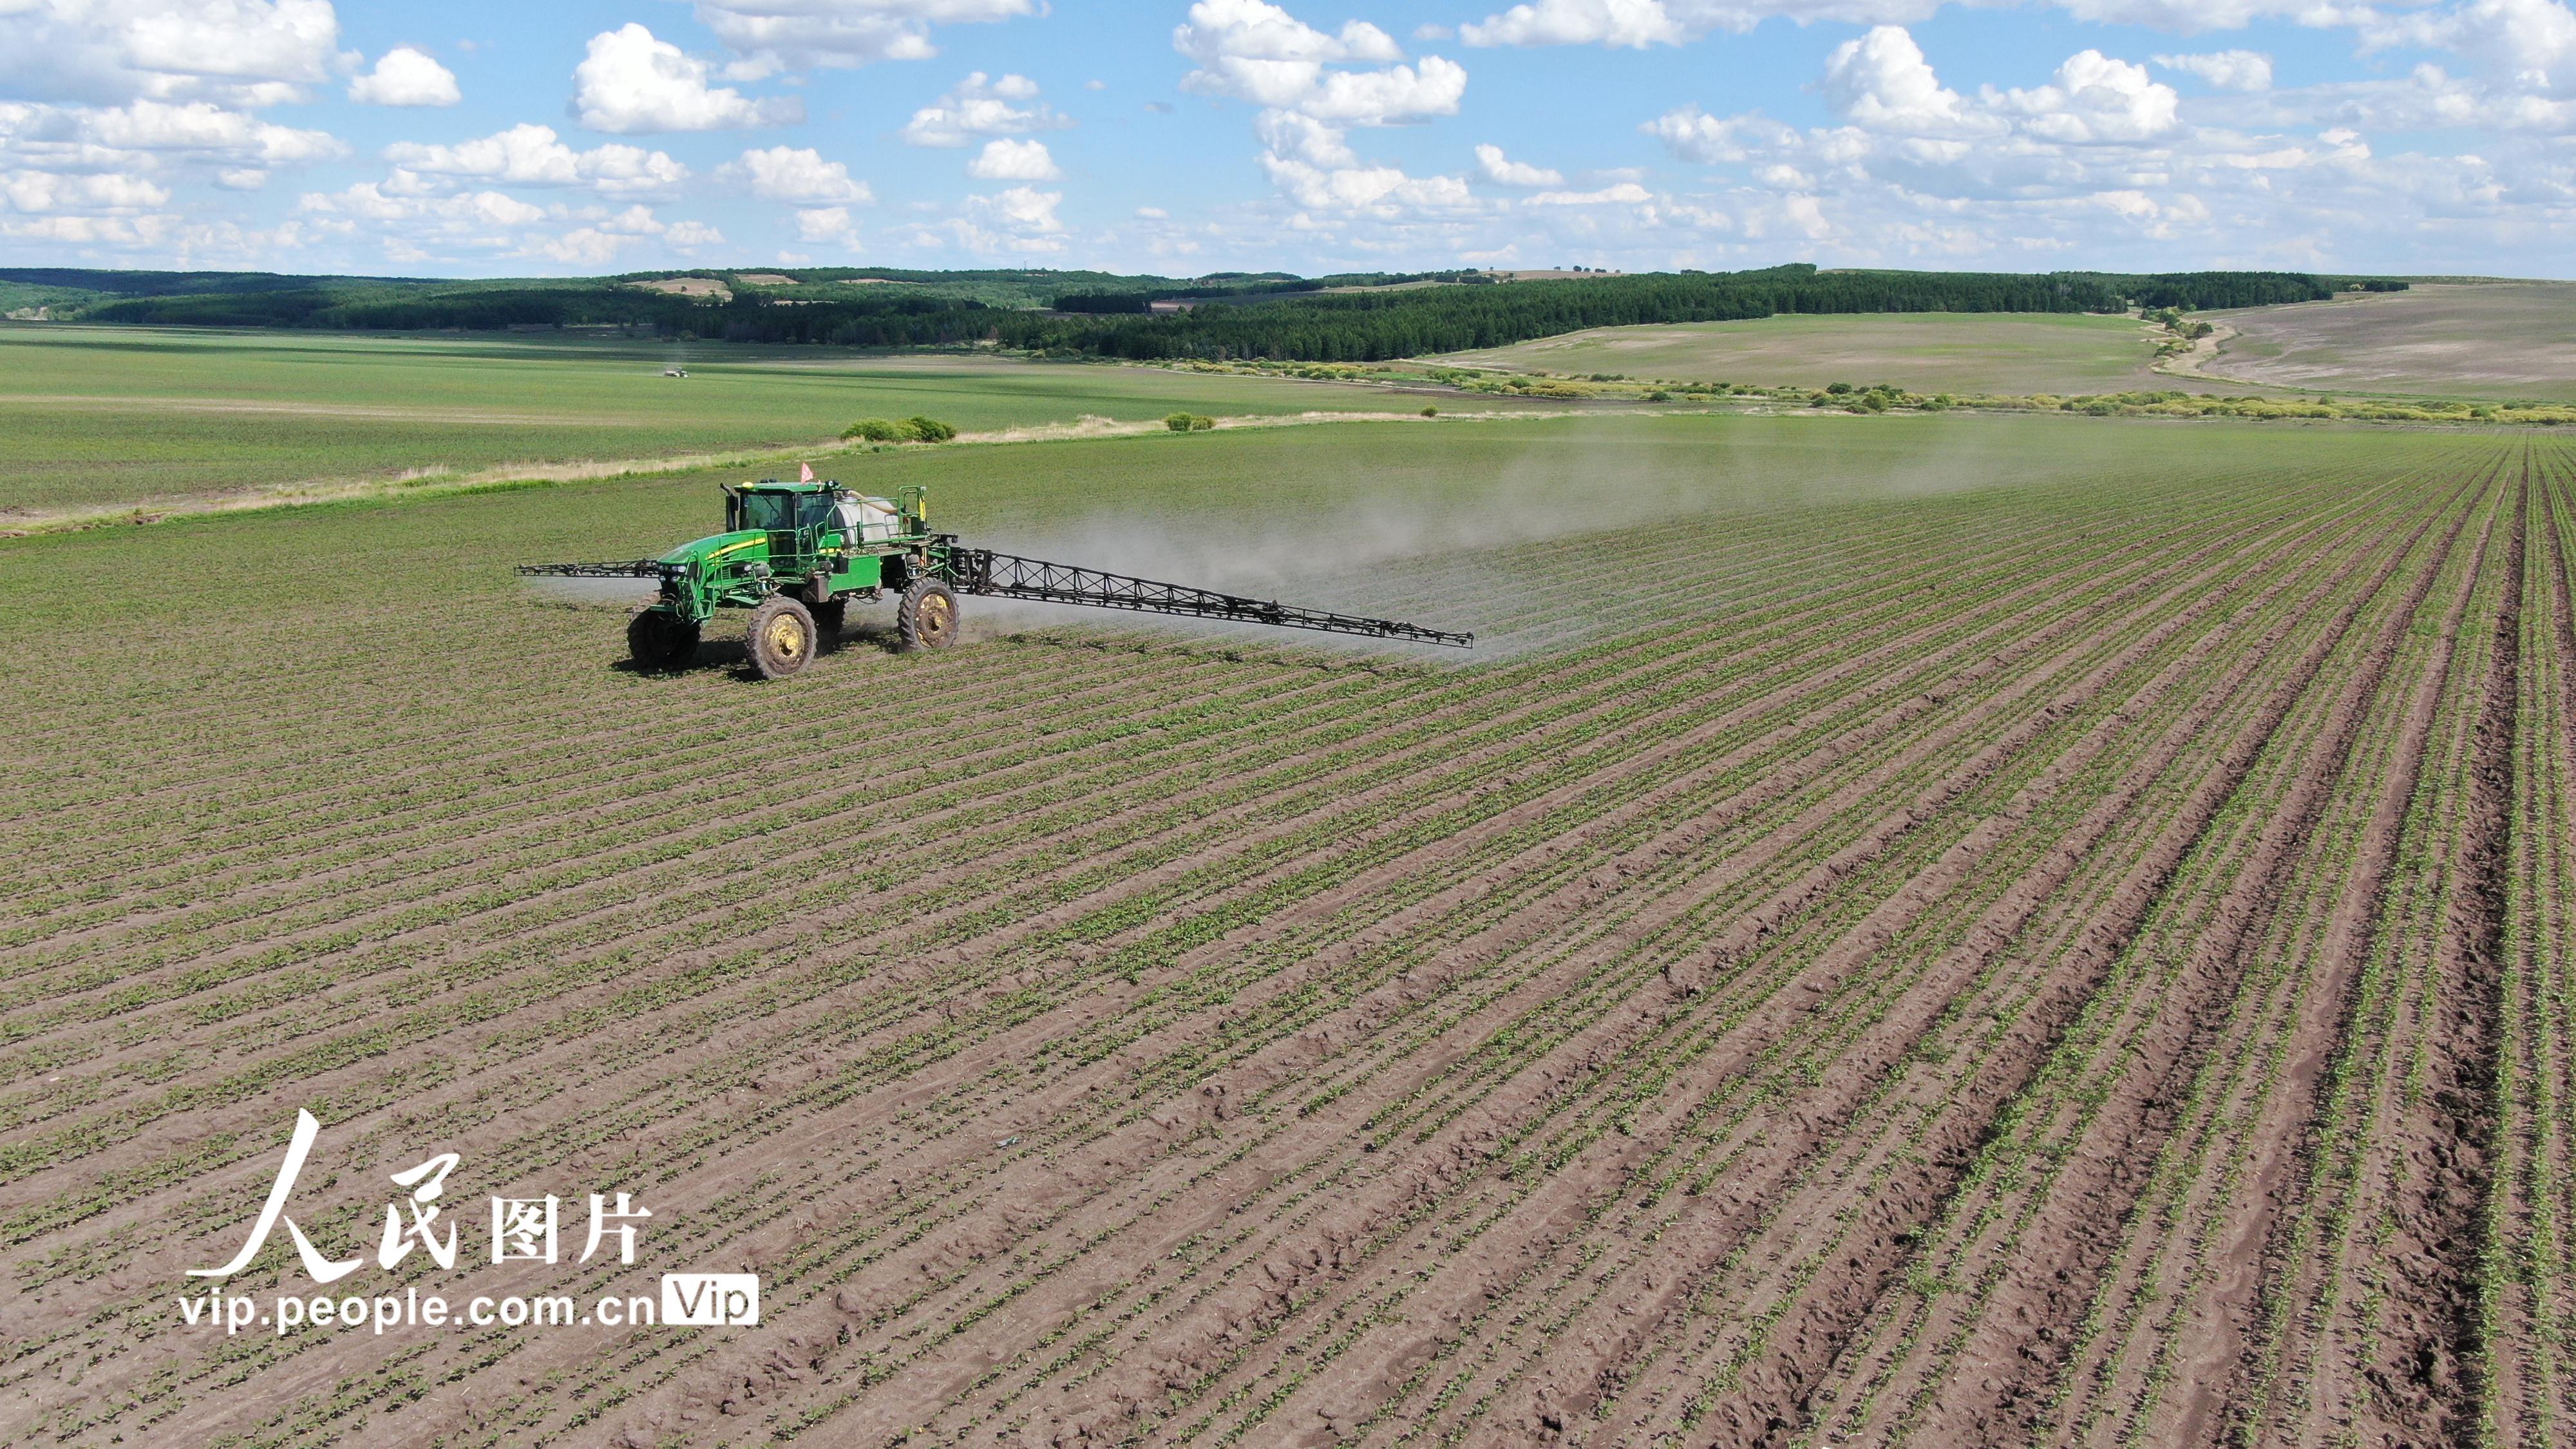 北大荒紅五月農場全力開展苗期除草作業、中耕施肥作業。